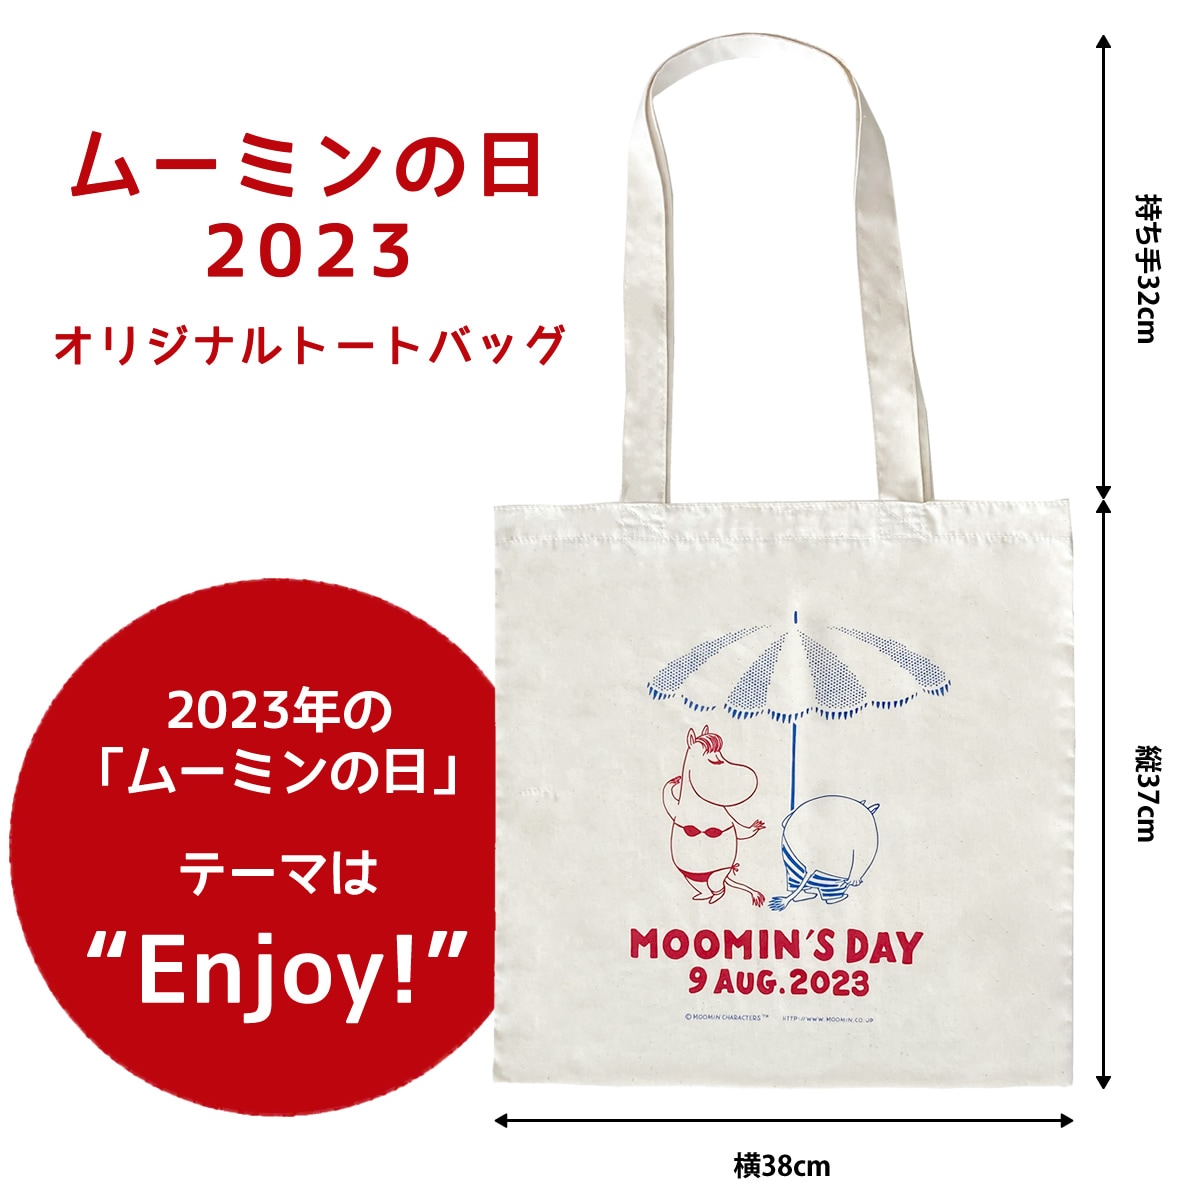 8月9日ムーミンの日キャンペーン オリジナルトートバッグプレゼント